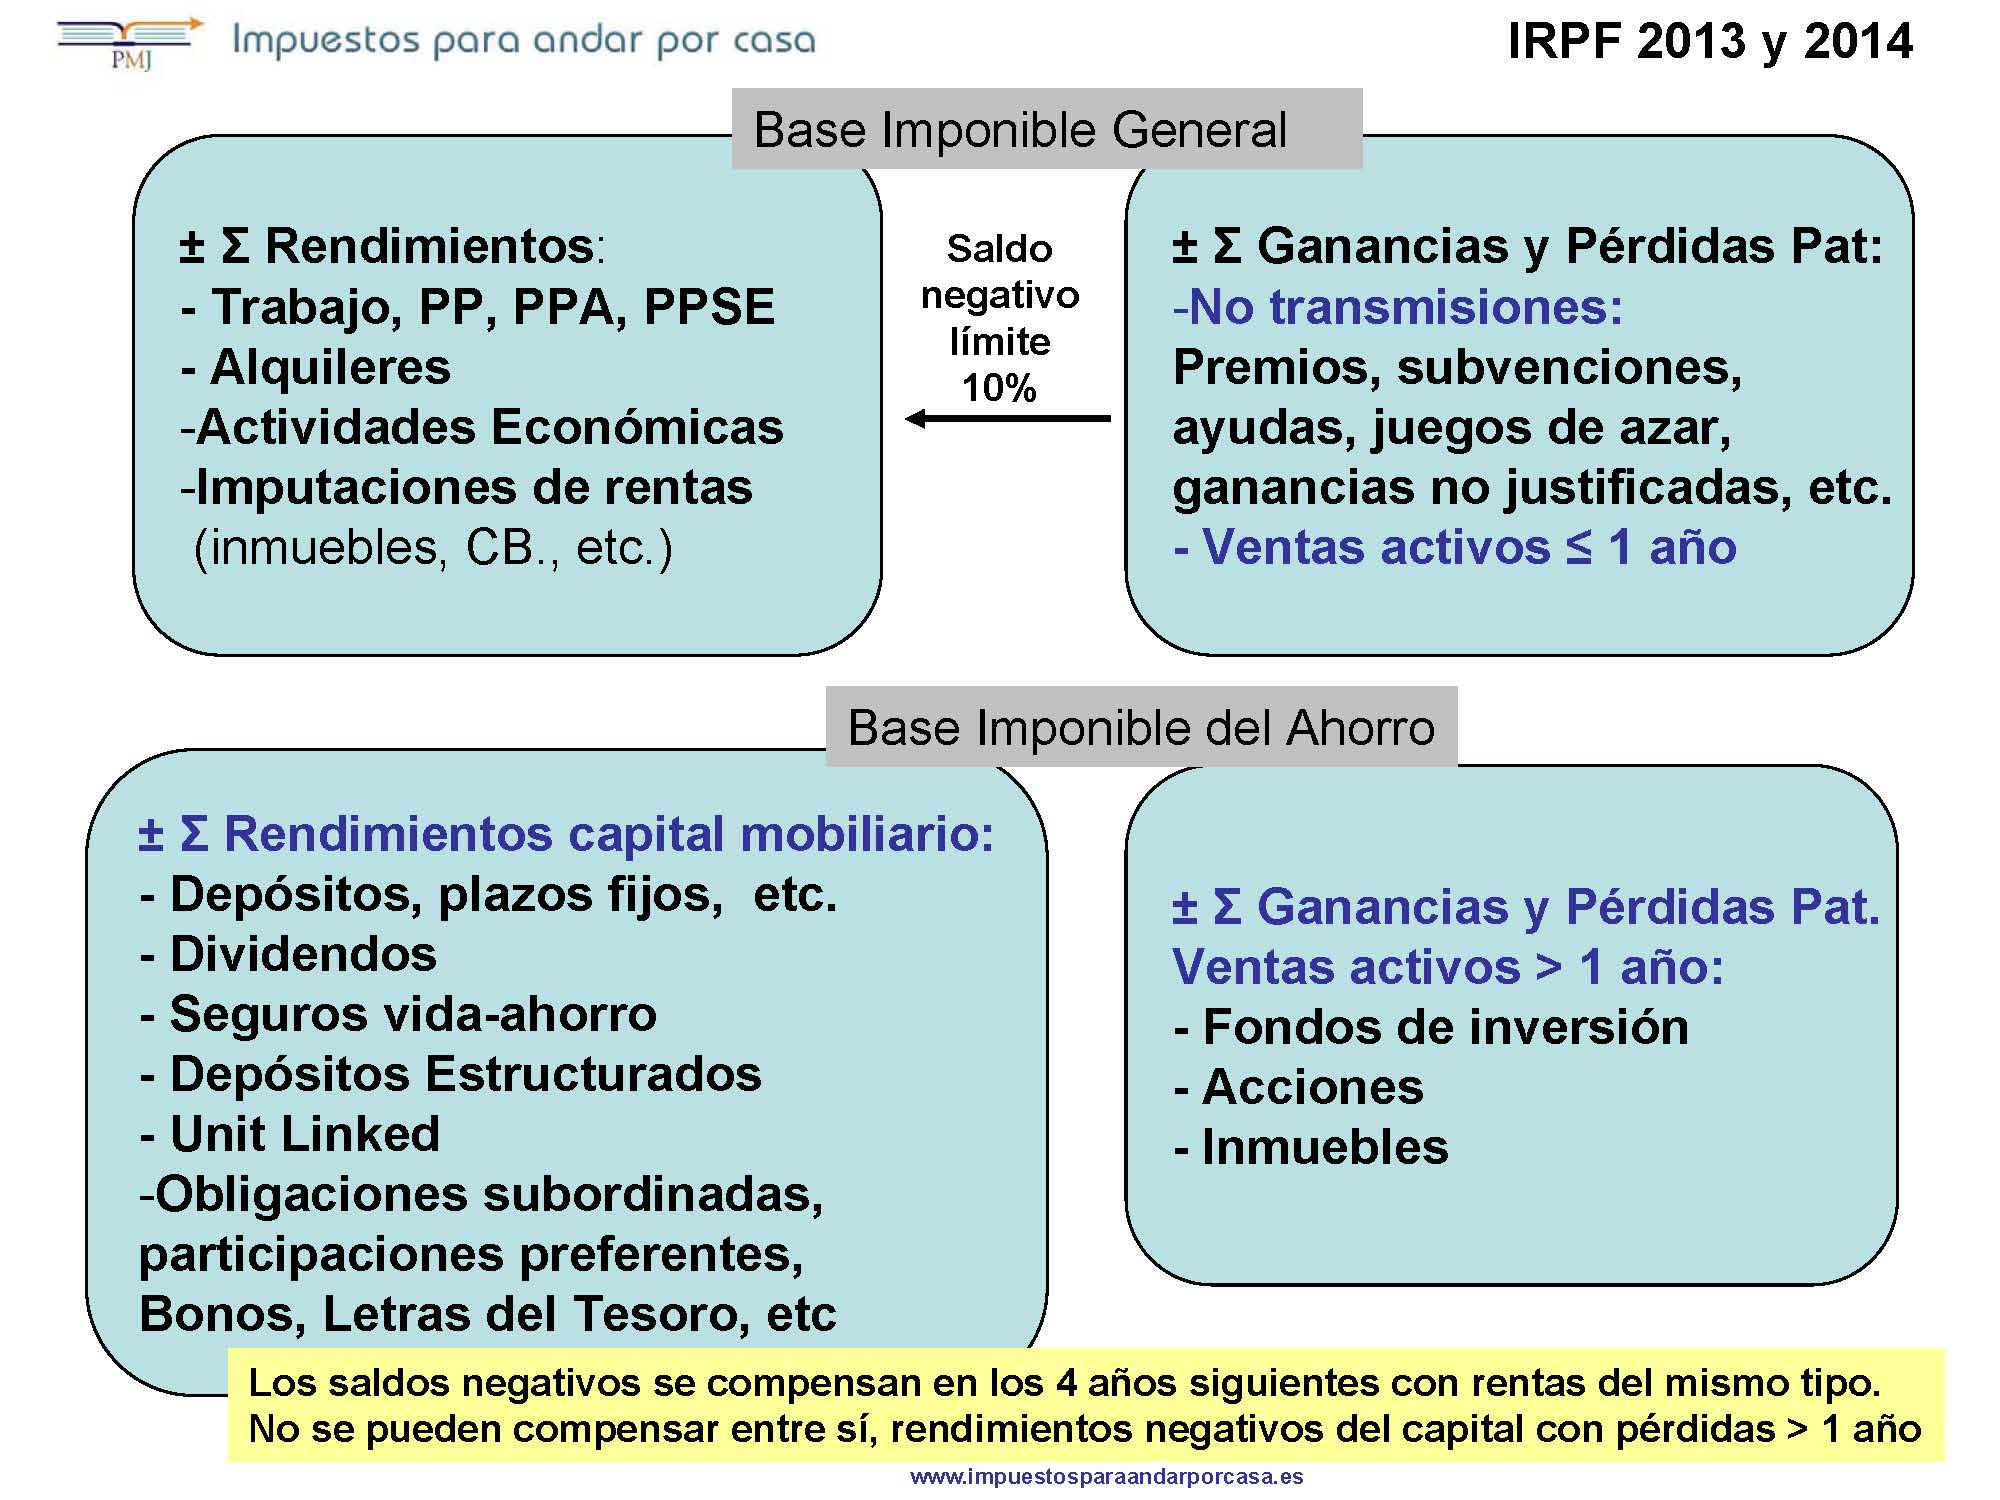 Clasificación y compensación de rentas IRPF